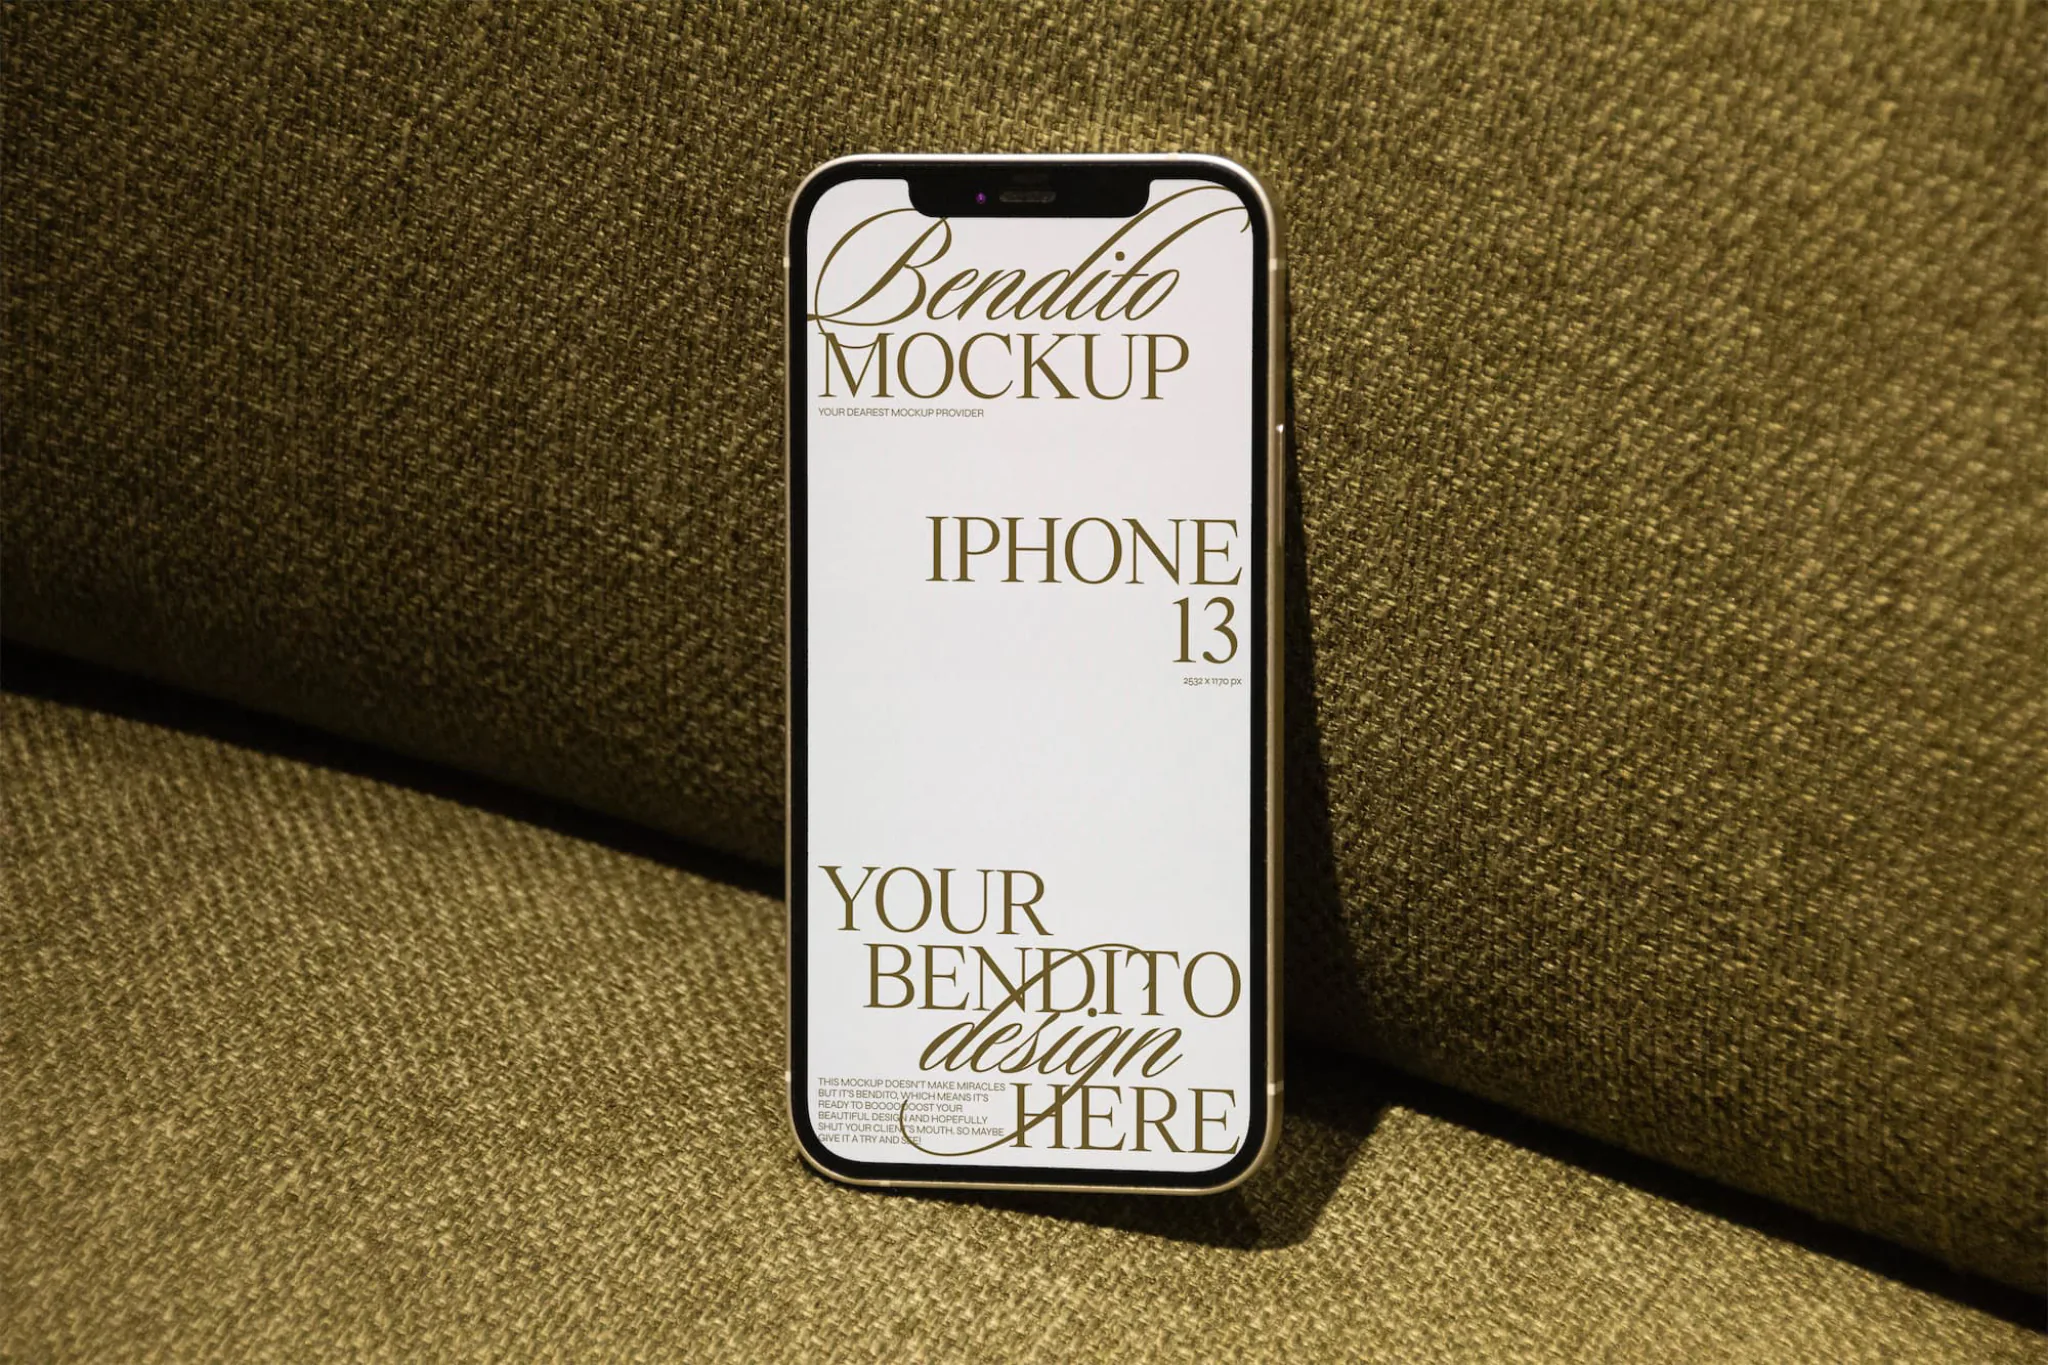 Iphone mockup on elegant fabric background.